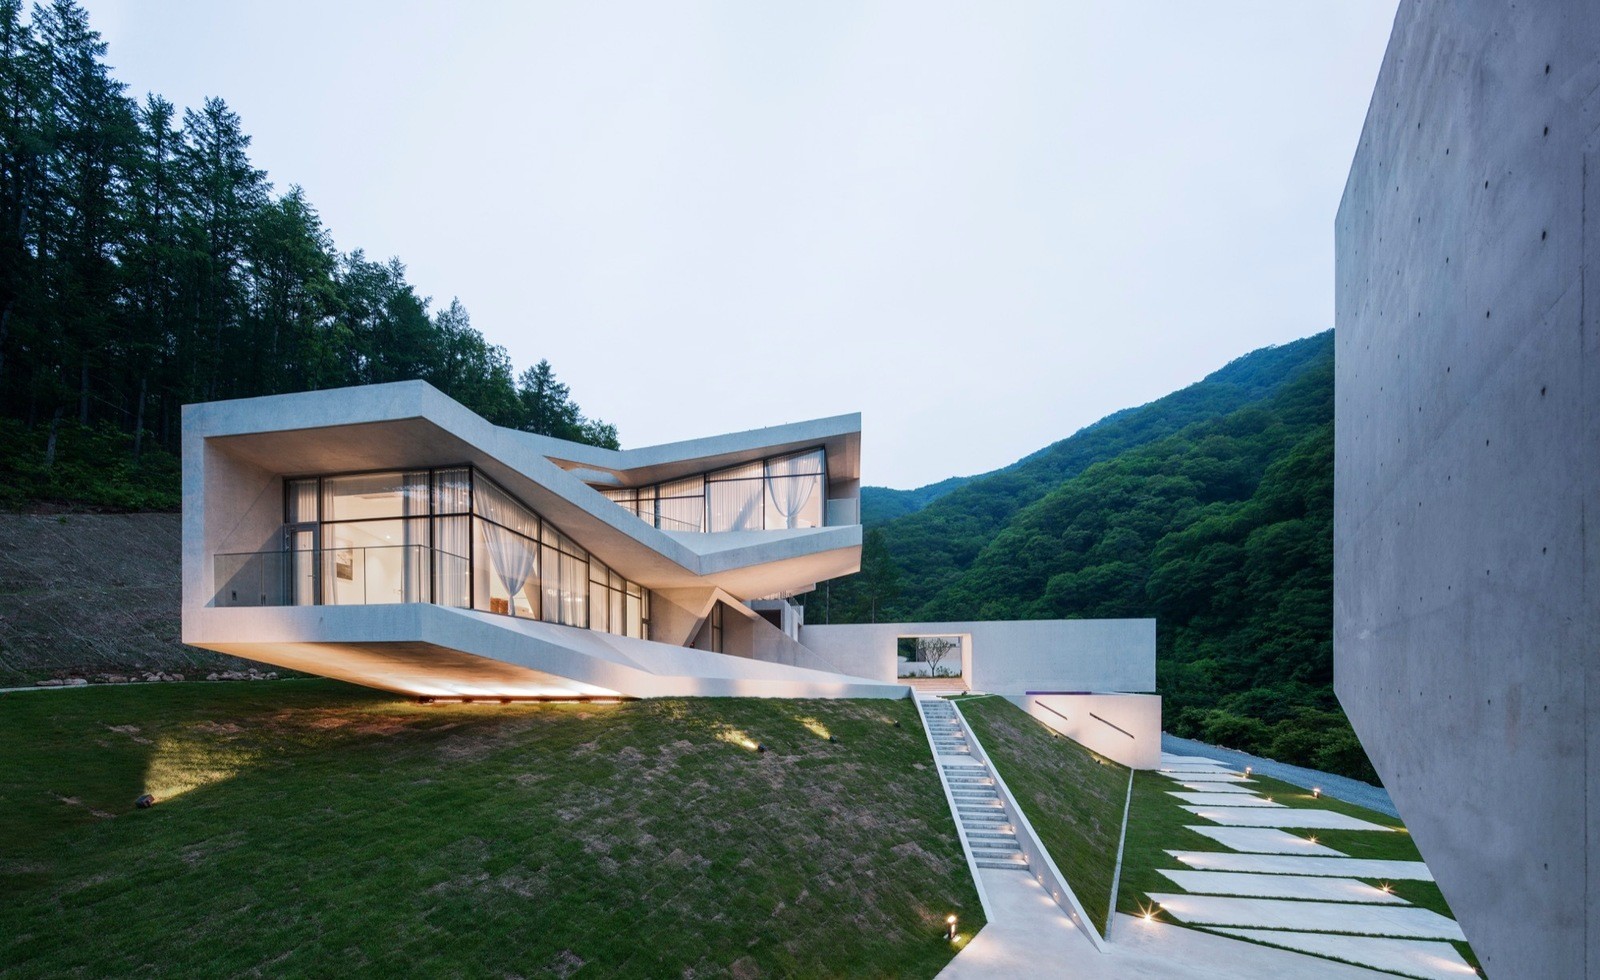  Residence in South Korea